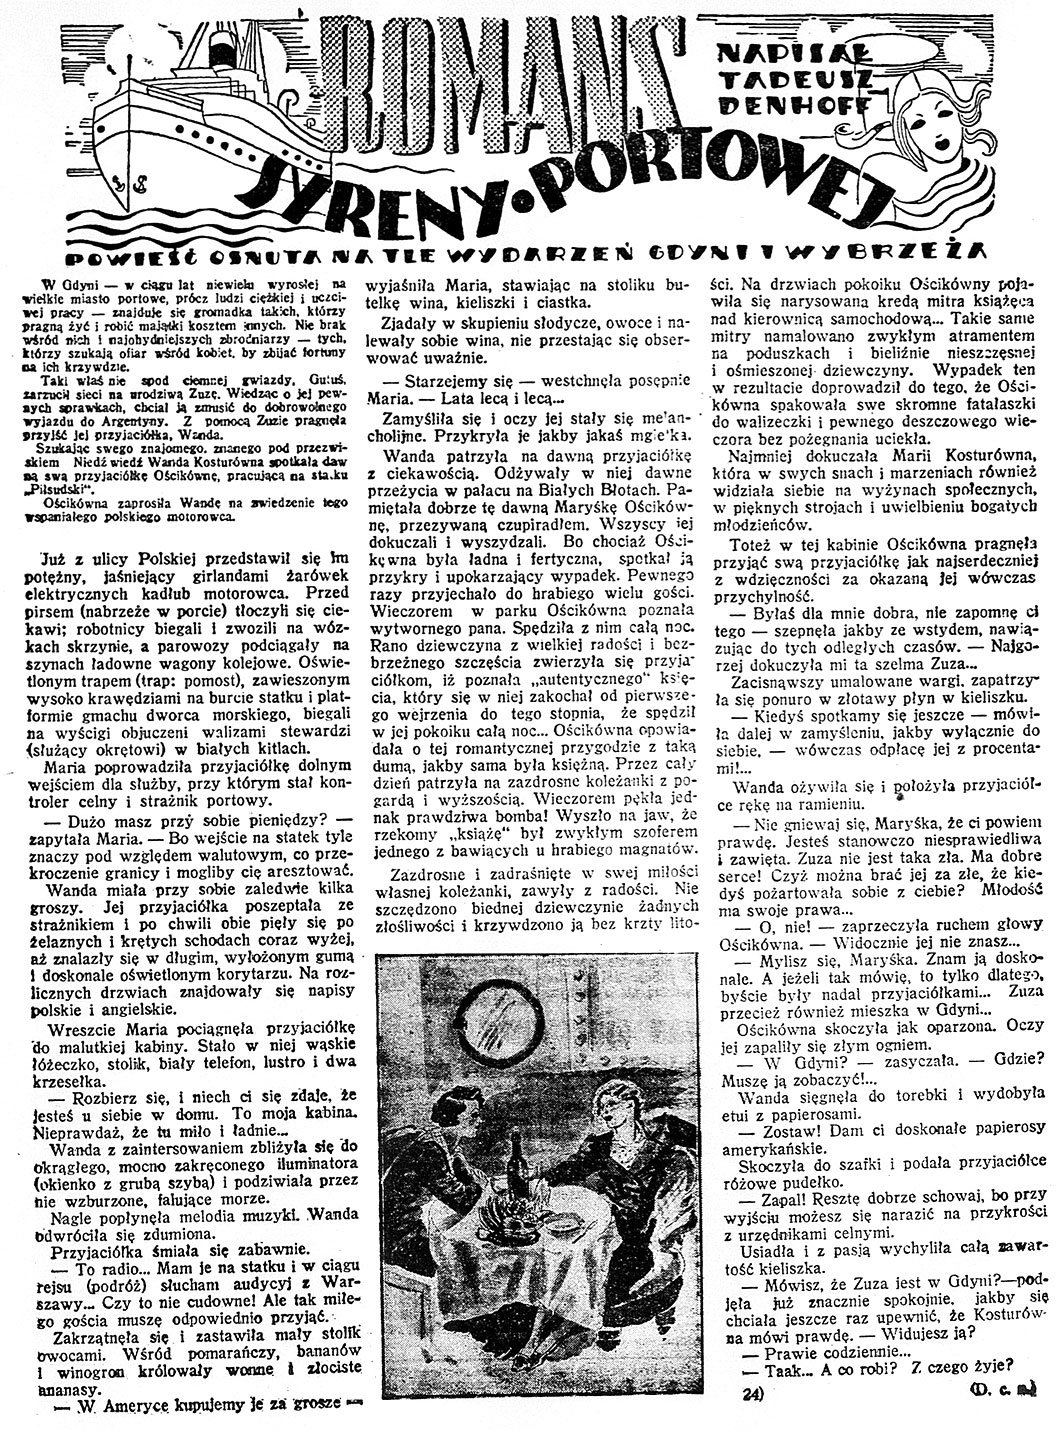 Romans syreny portowej / Tadeusz Denhoff // Dzień Dobry. - 1938, nr 33, s. 11. - Il.